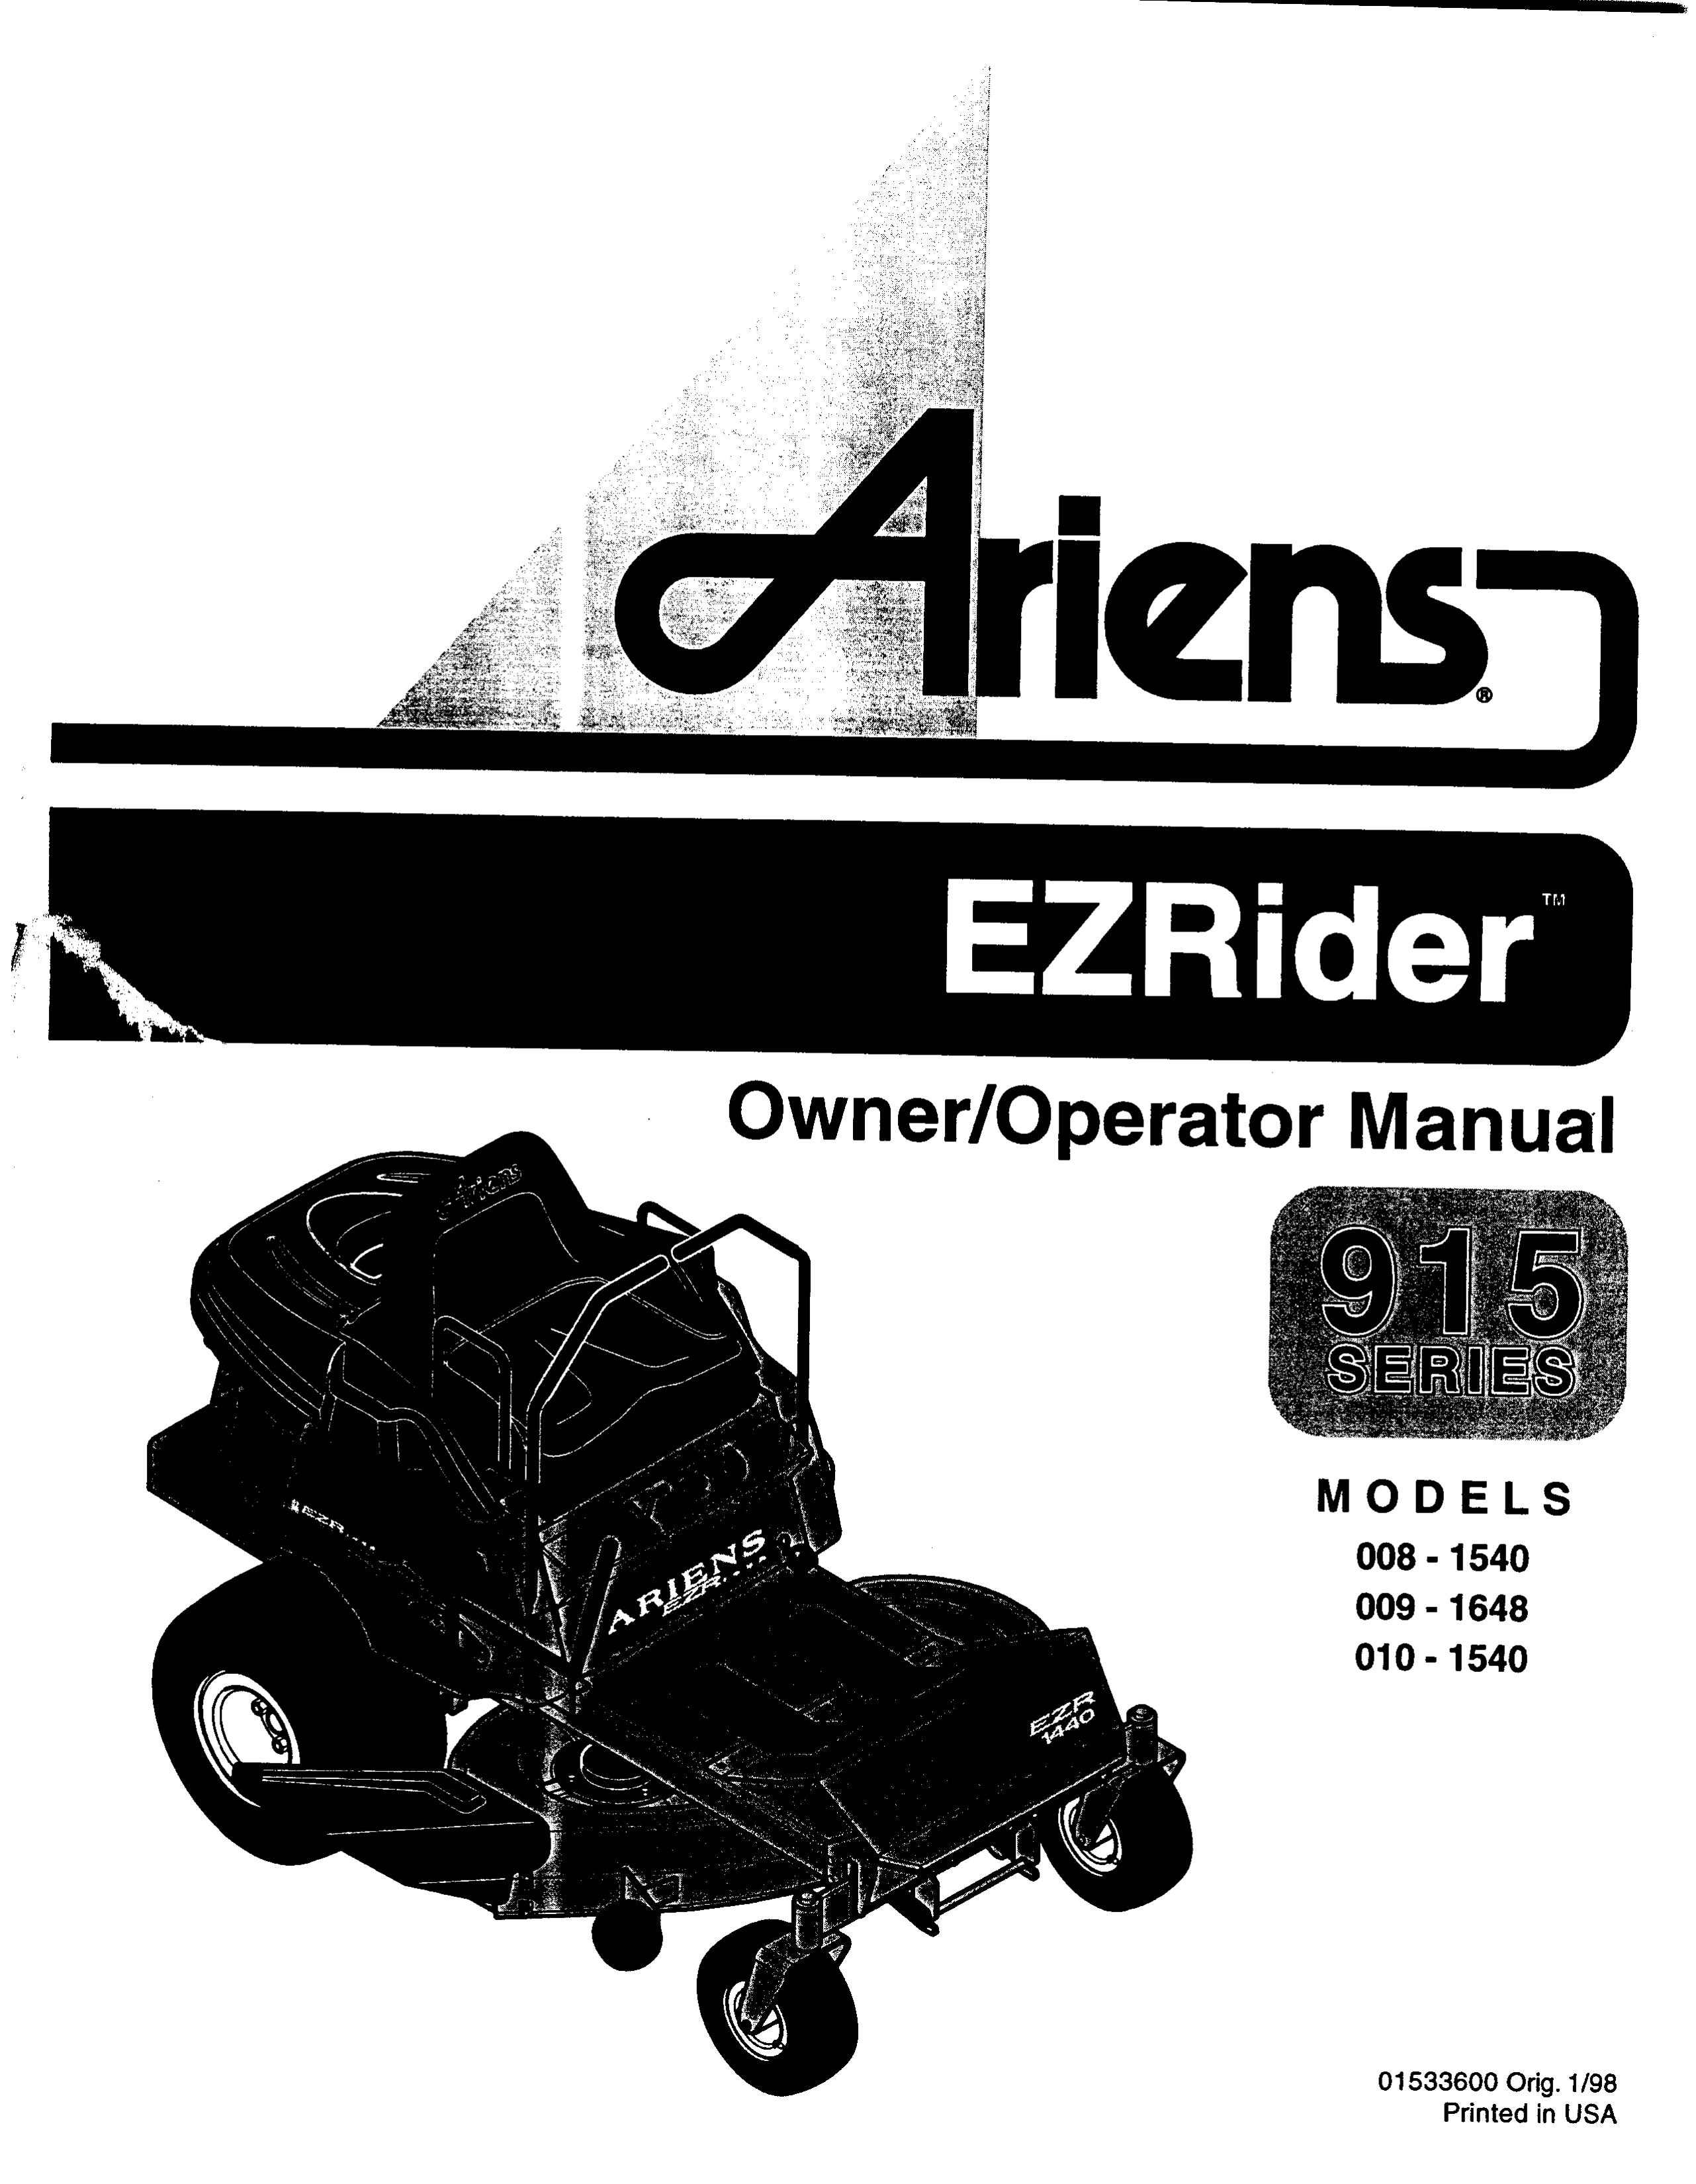 Ariens 009-1648 Lawn Mower User Manual